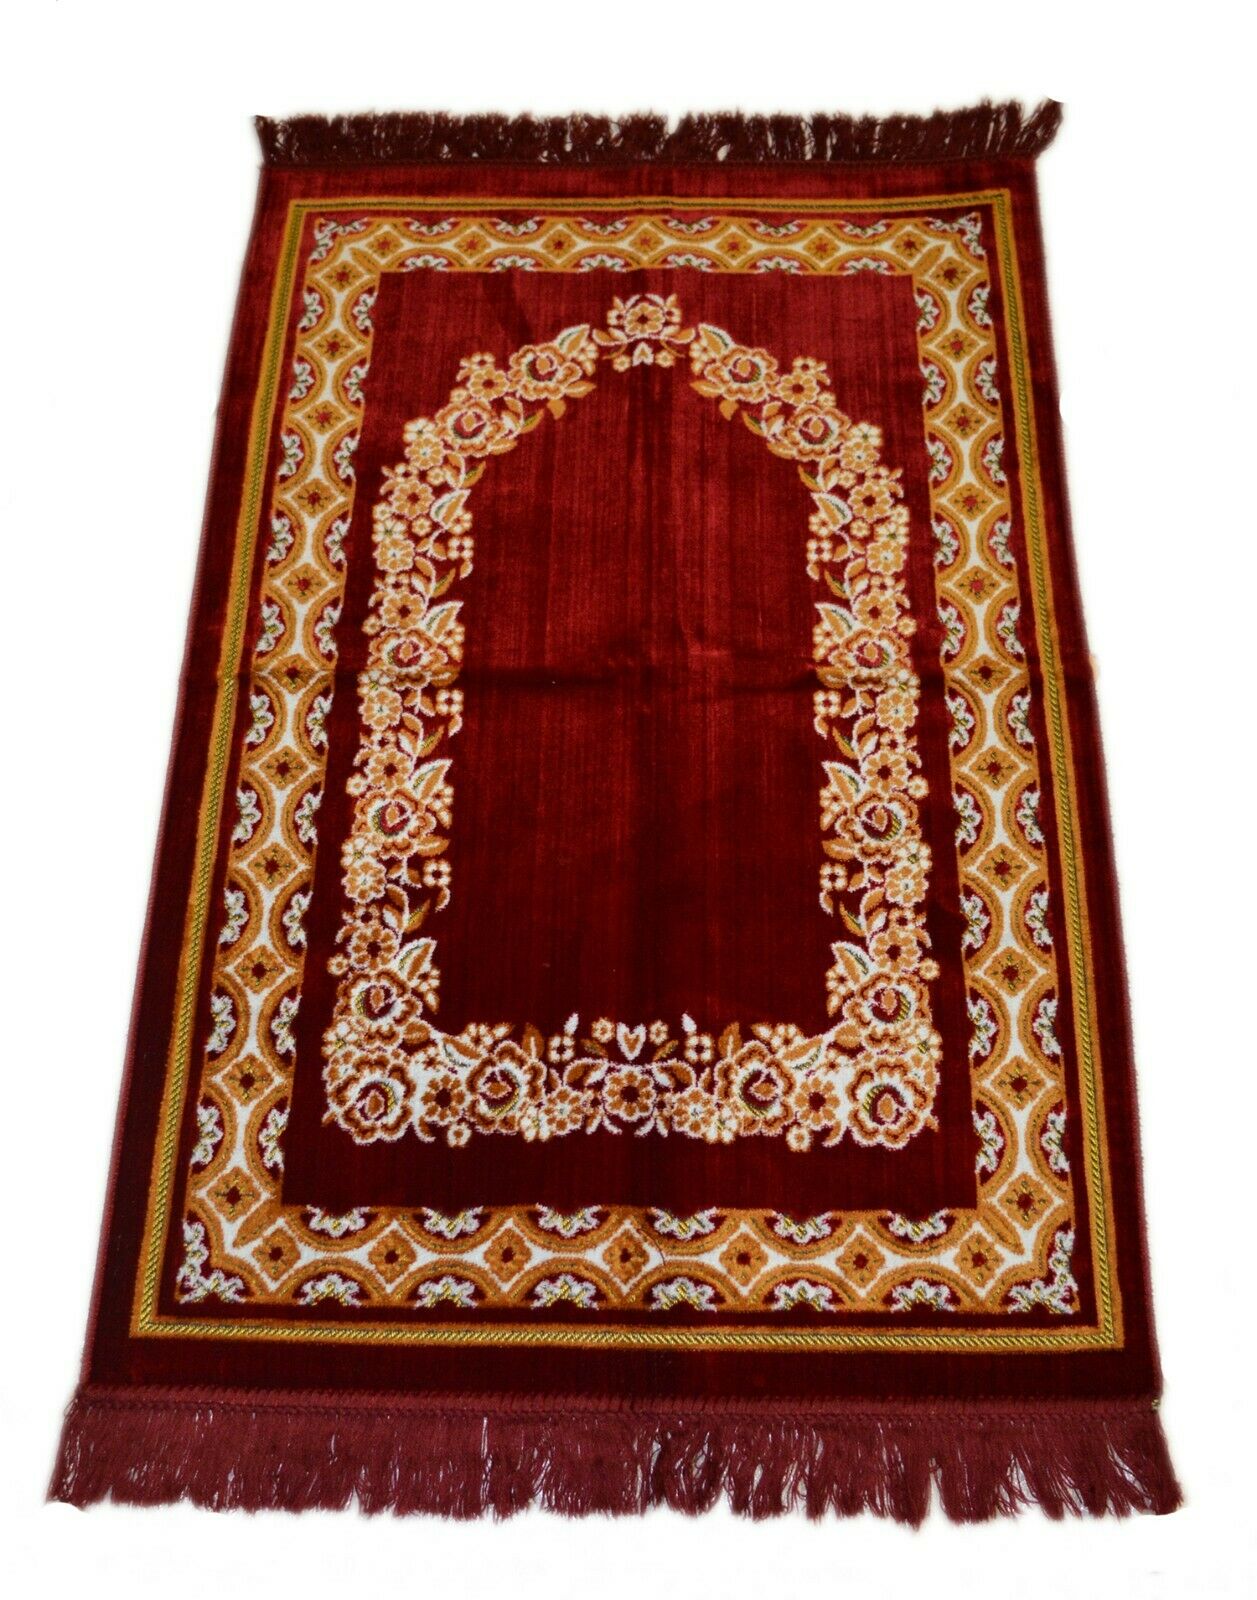 Prayer Rug Carpet Islamic Muslim Salah Meditation Mat Turkish Plush Portable Red